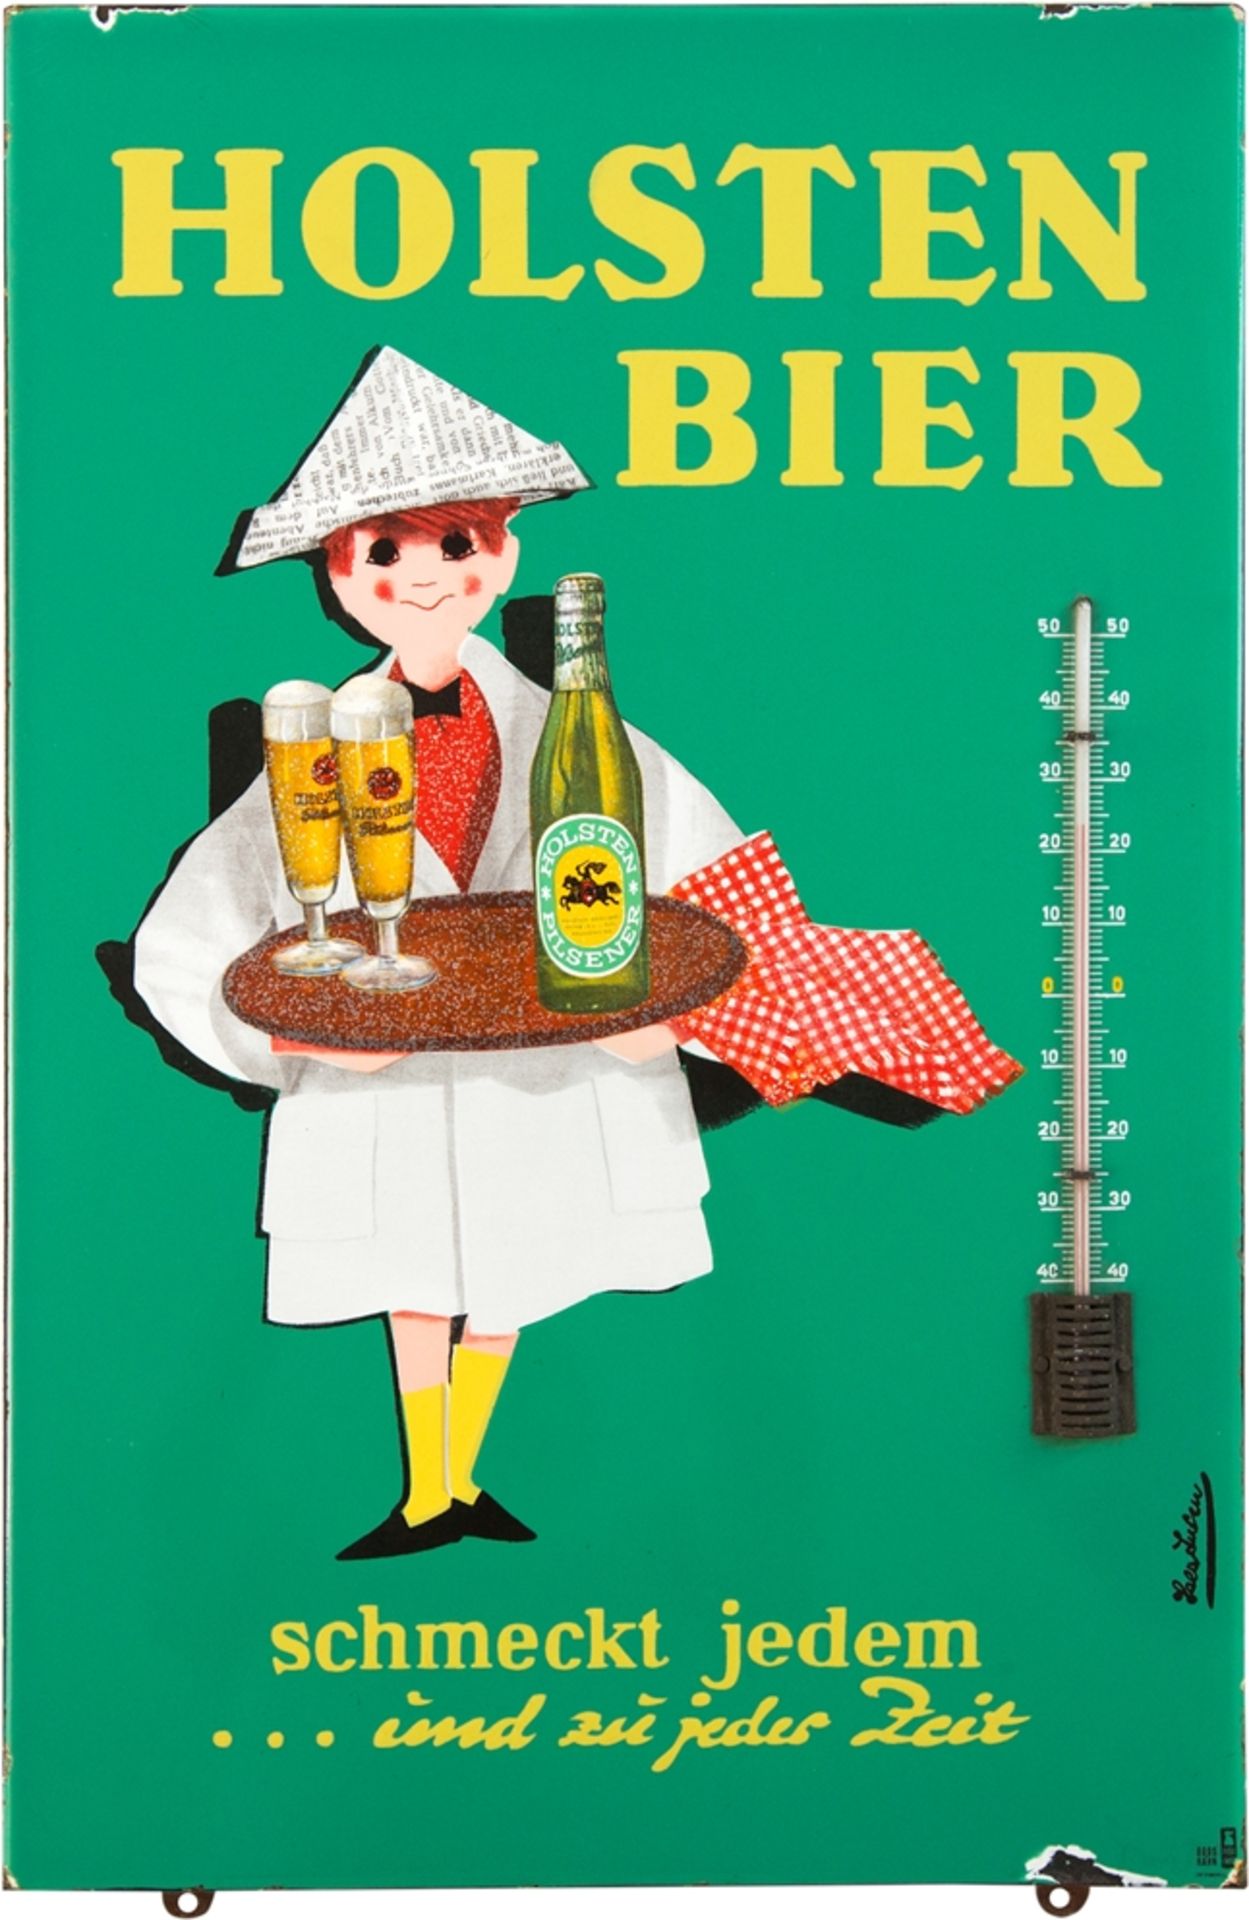 Emailschild Thermometer Holsten Bier, signiert, Hamburg, um 1950